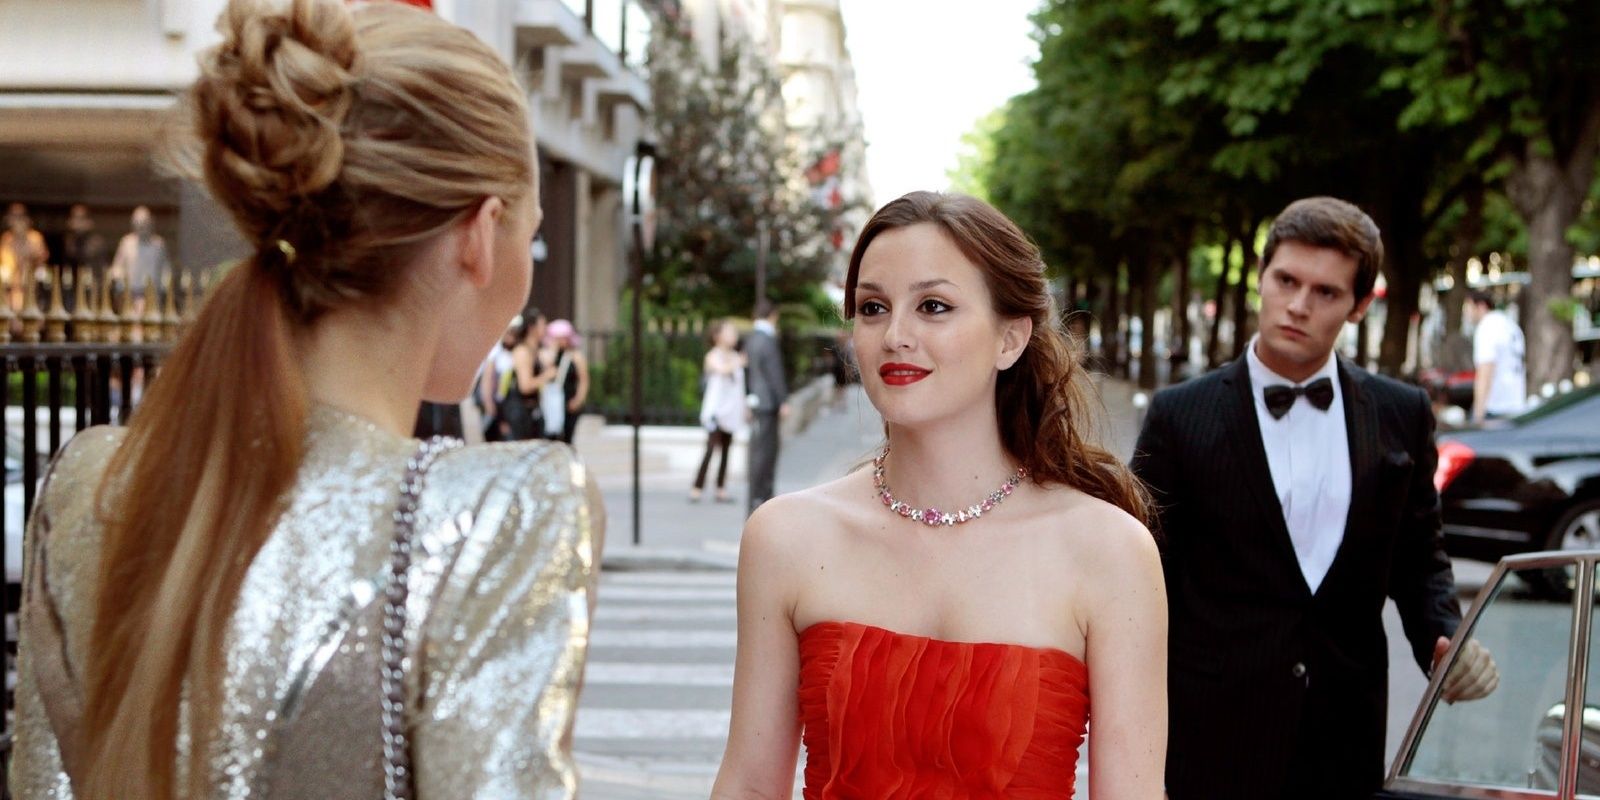 Blair Waldorf talking to Serena in Paris in Gossip Girl